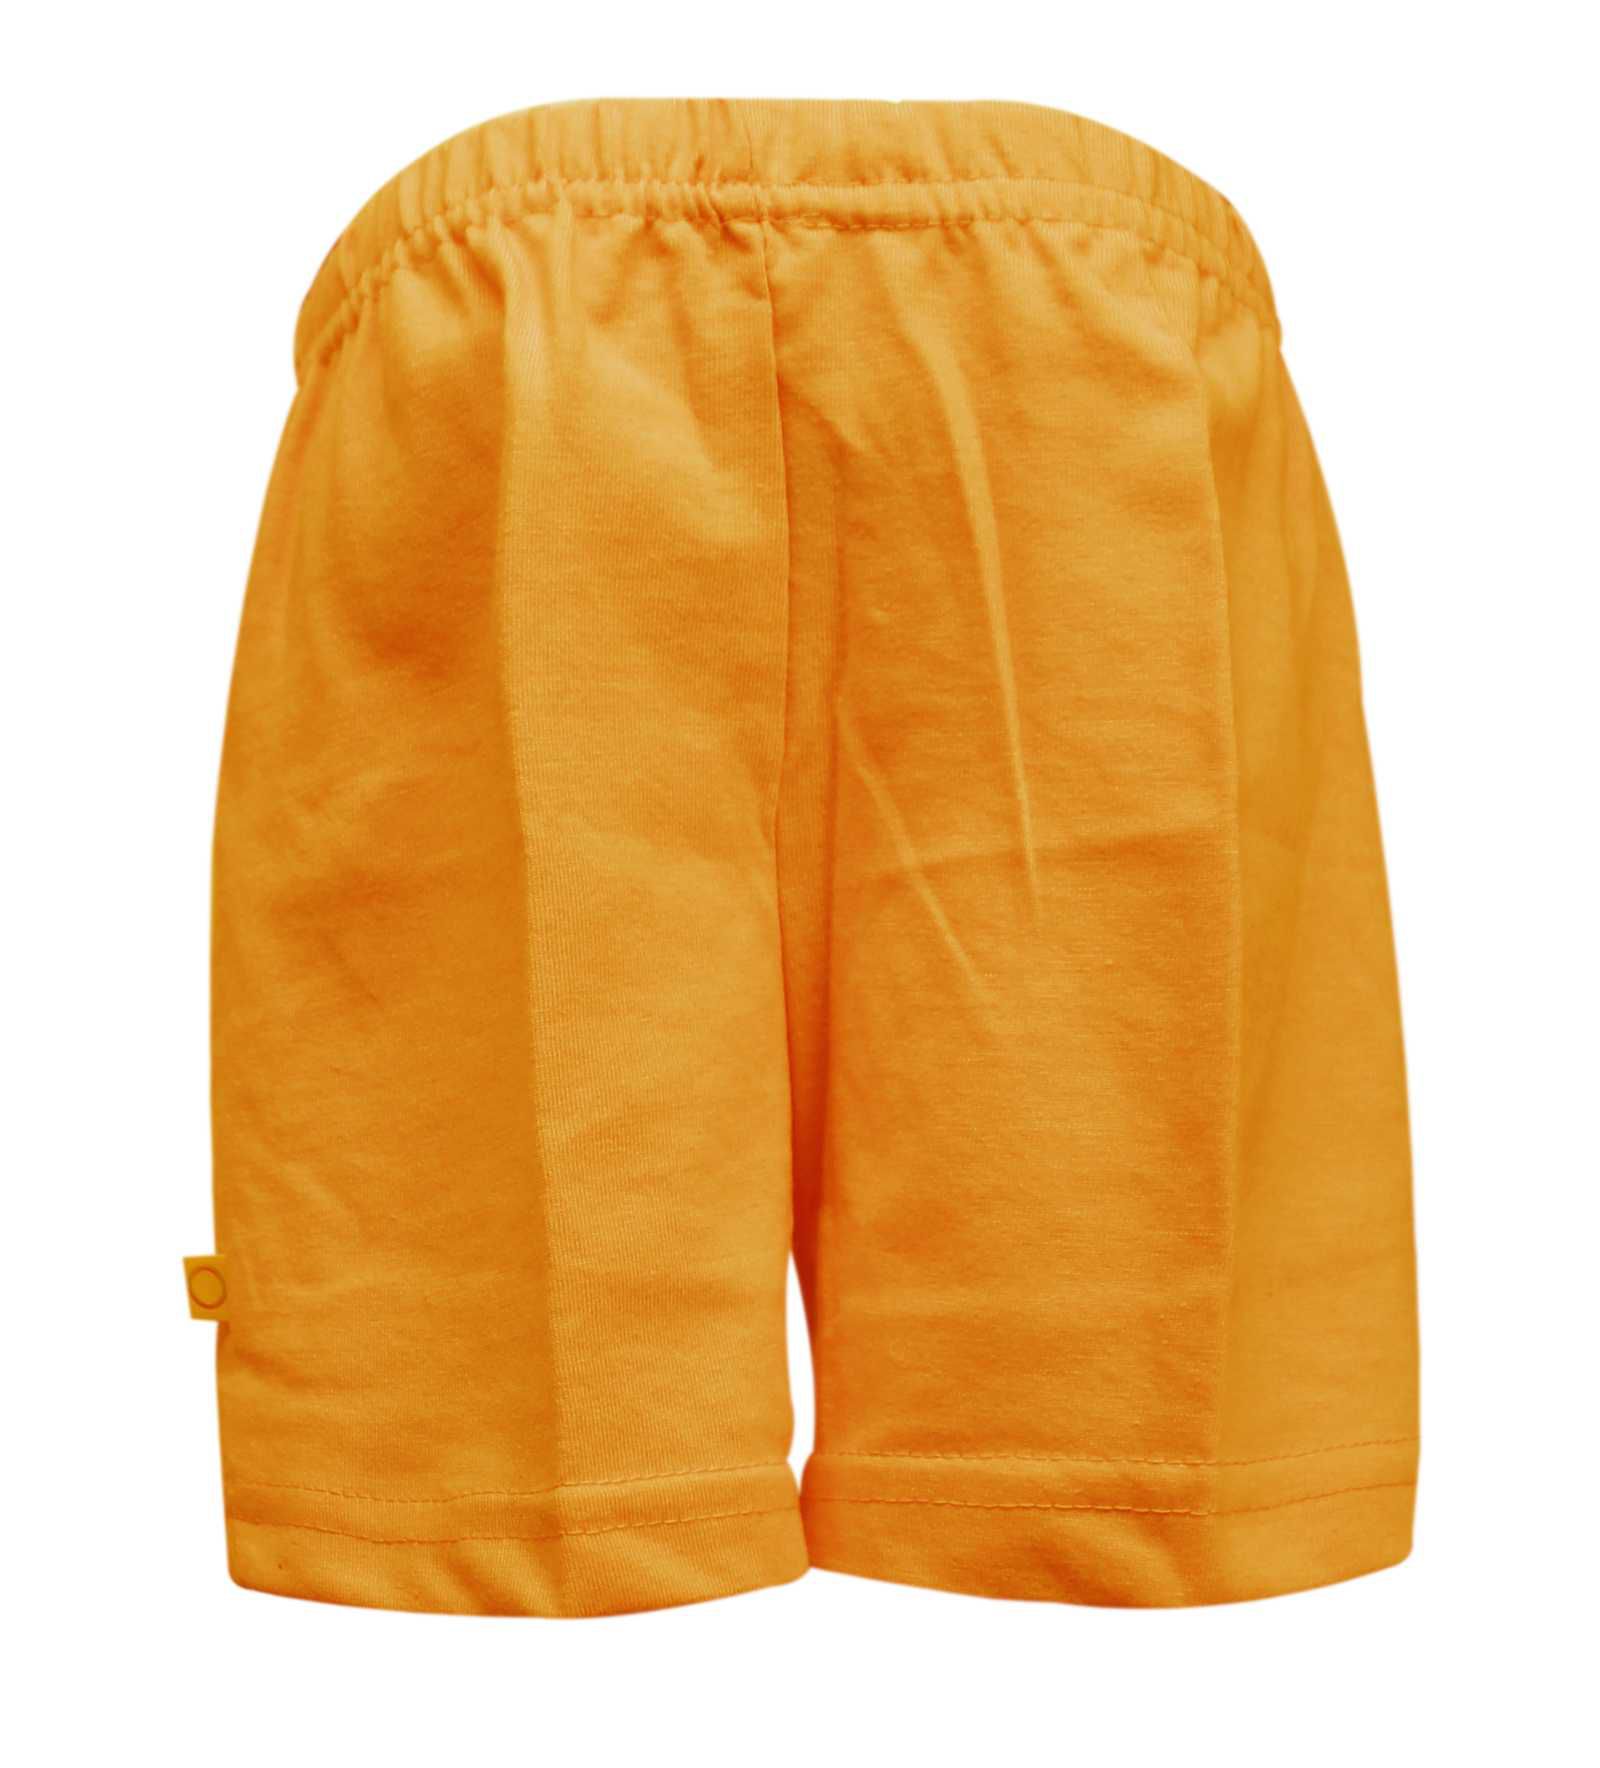 Tumble Orange Knee Length Shorts - 0 to 6 Months - Buy Tumble Orange ...